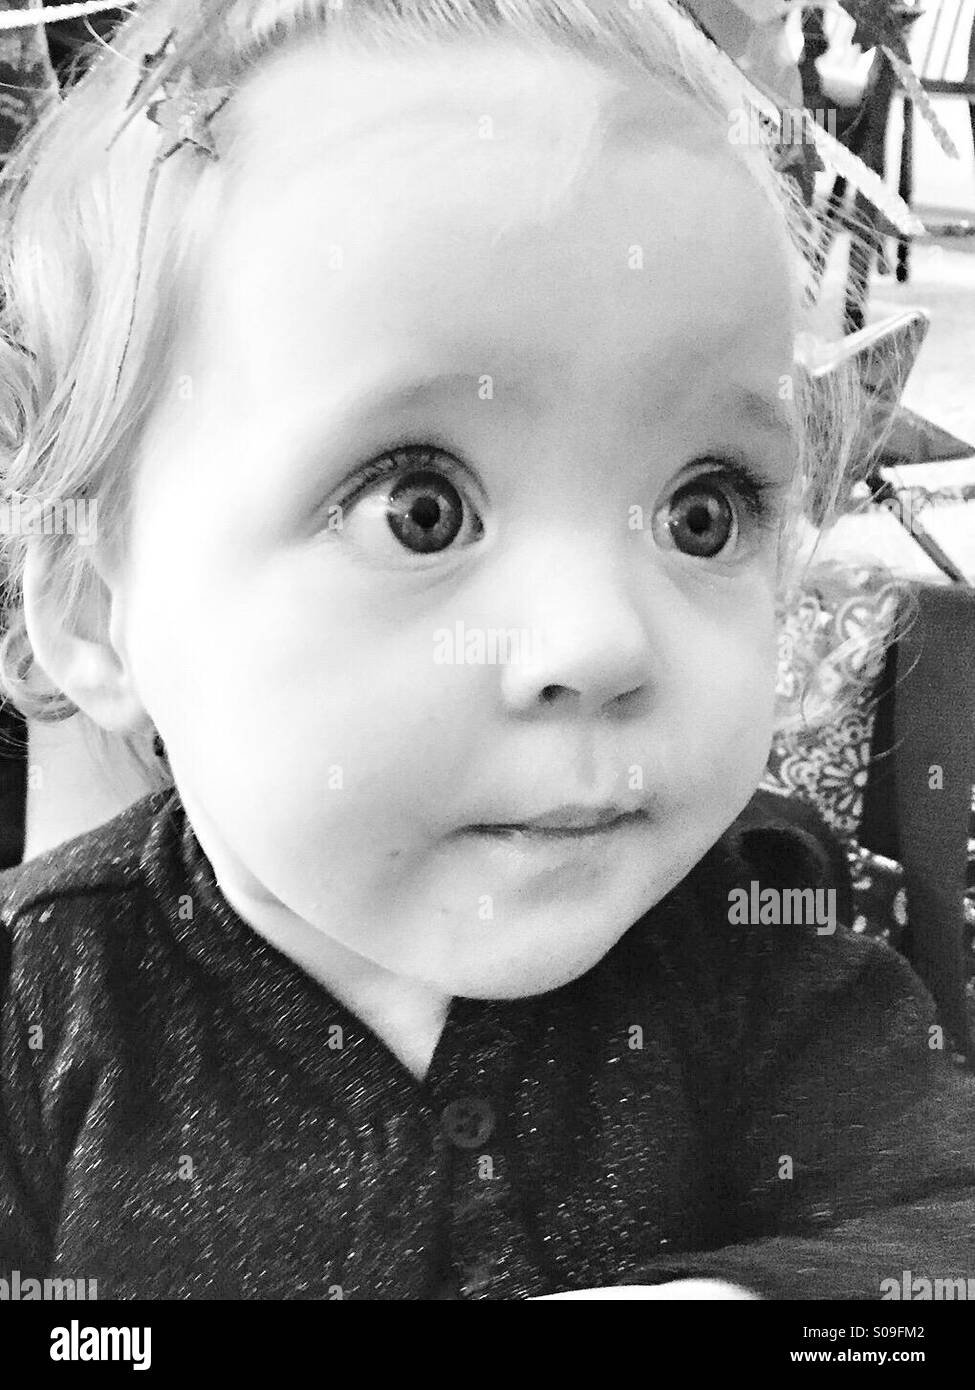 Ein 11 Monate altes mit weit aufgerissenen Augen Baby Mädchen Porträt in schwarz und weiß. Stockfoto